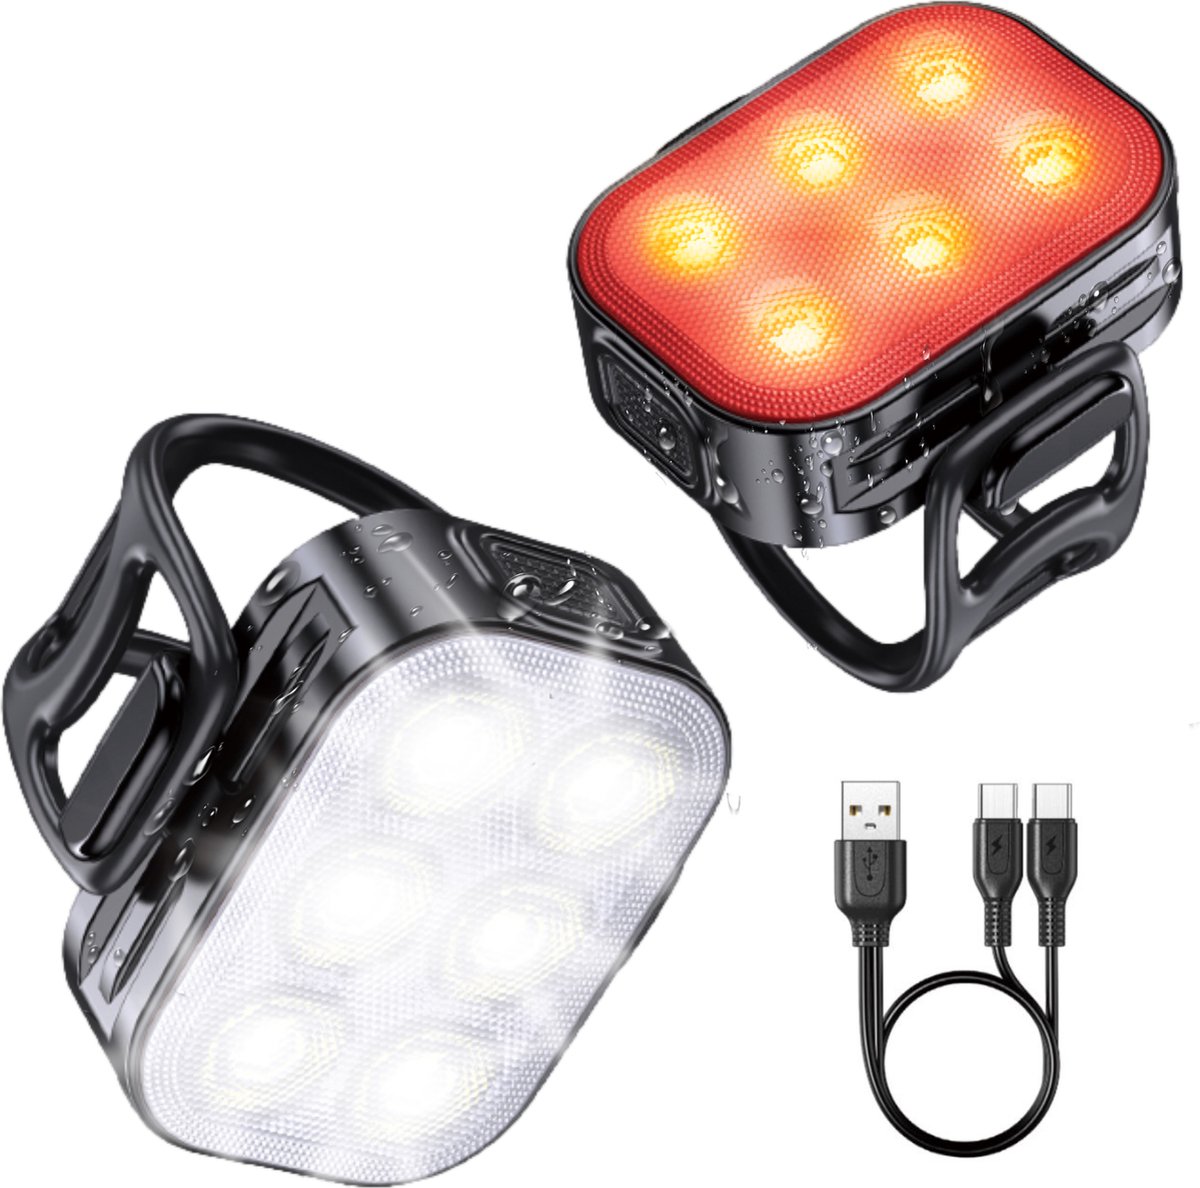 Inlustro LED Fietslamp Set - Voorlicht / Achterlicht - Fietslampjes Rood en Wit - Fietslicht Koplamp - Waterdicht / USB Oplaadbaar - Inlustro